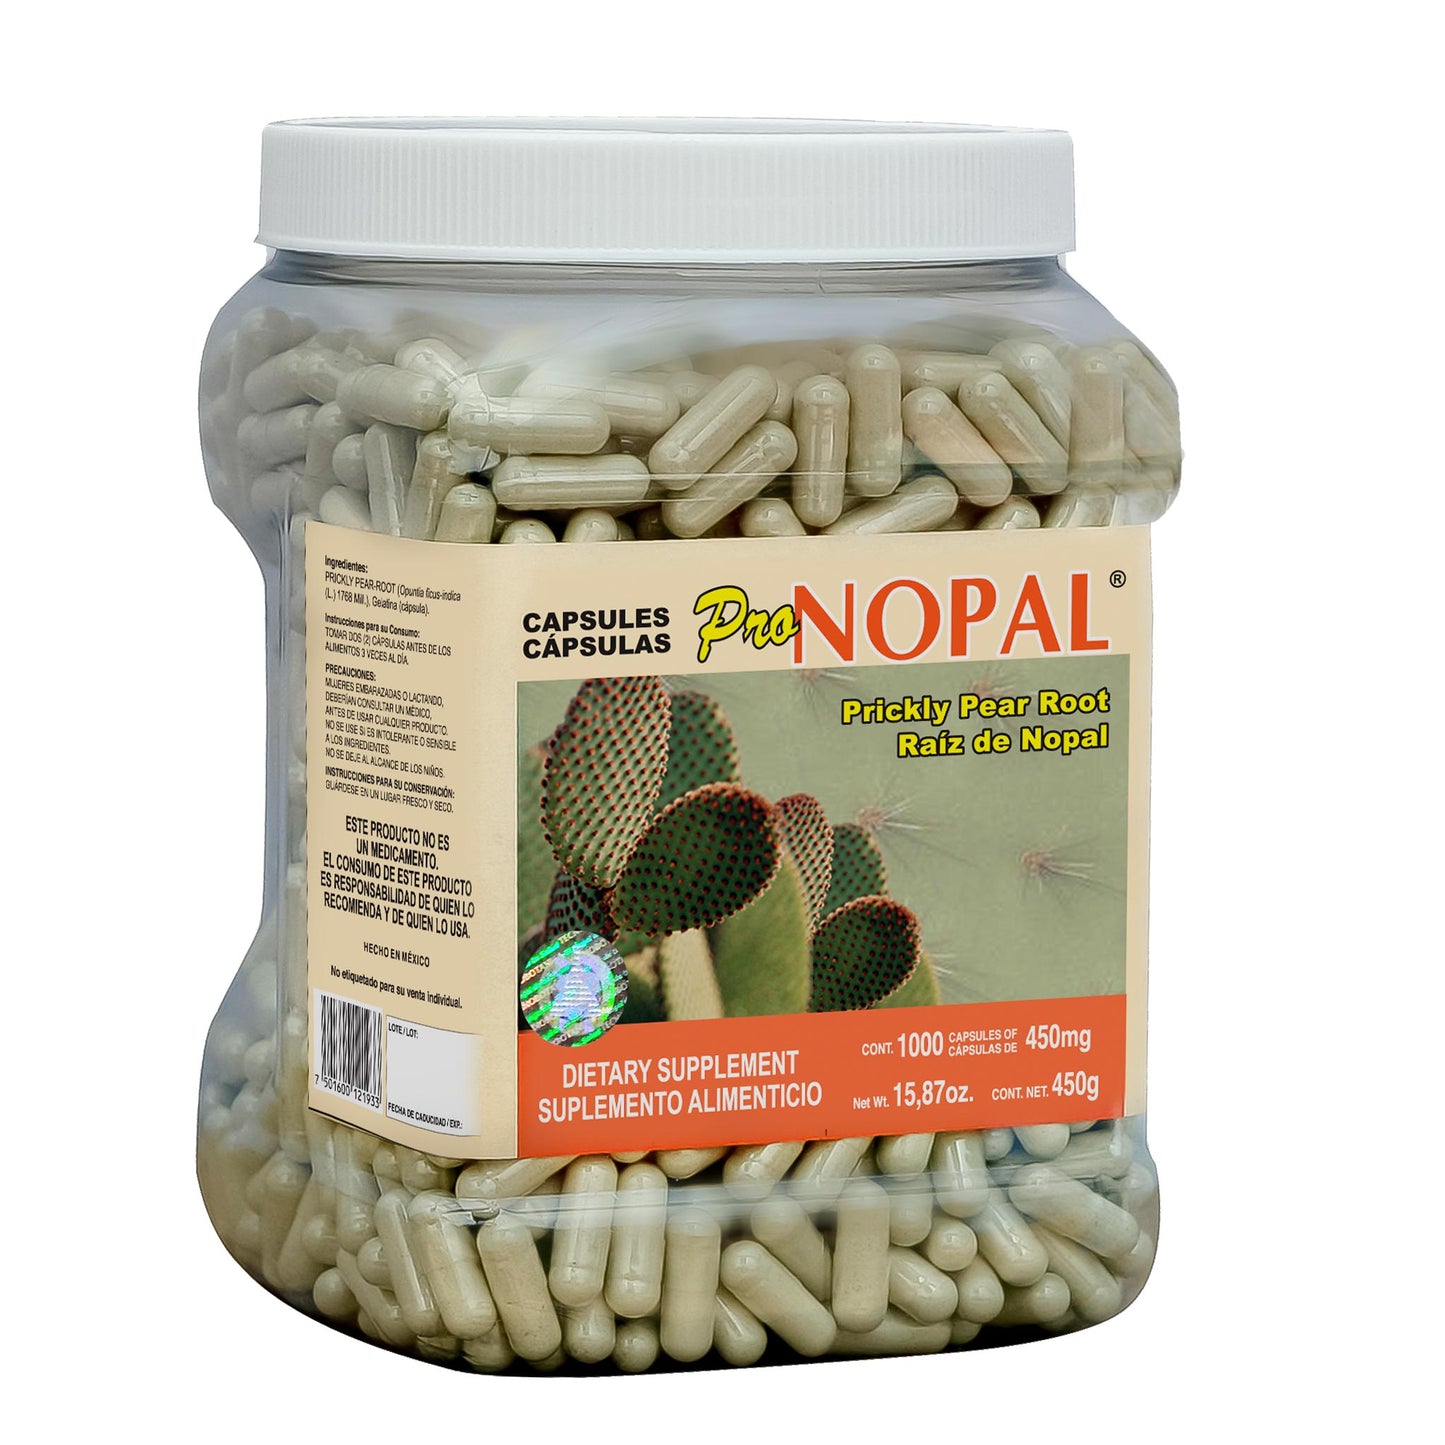 PRONOPAL ® 1000 cápsulas